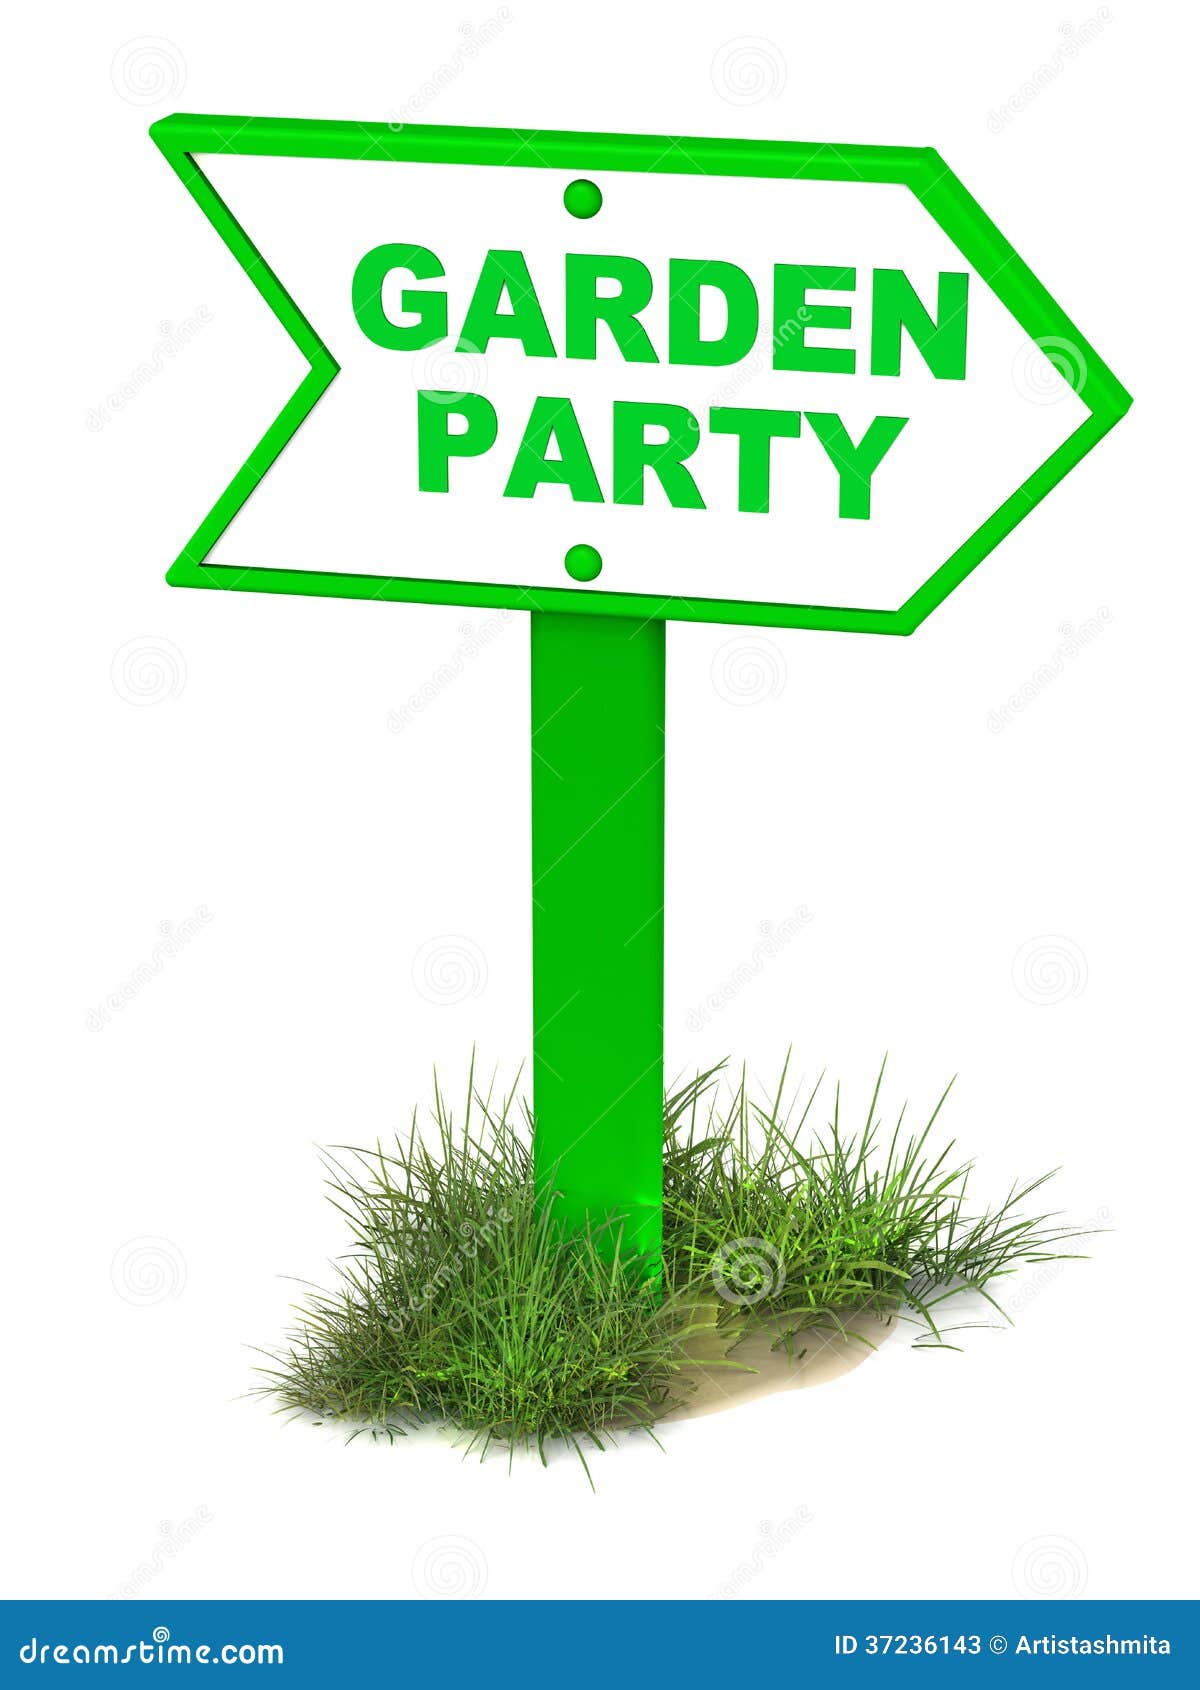 clipart garden party free - photo #15